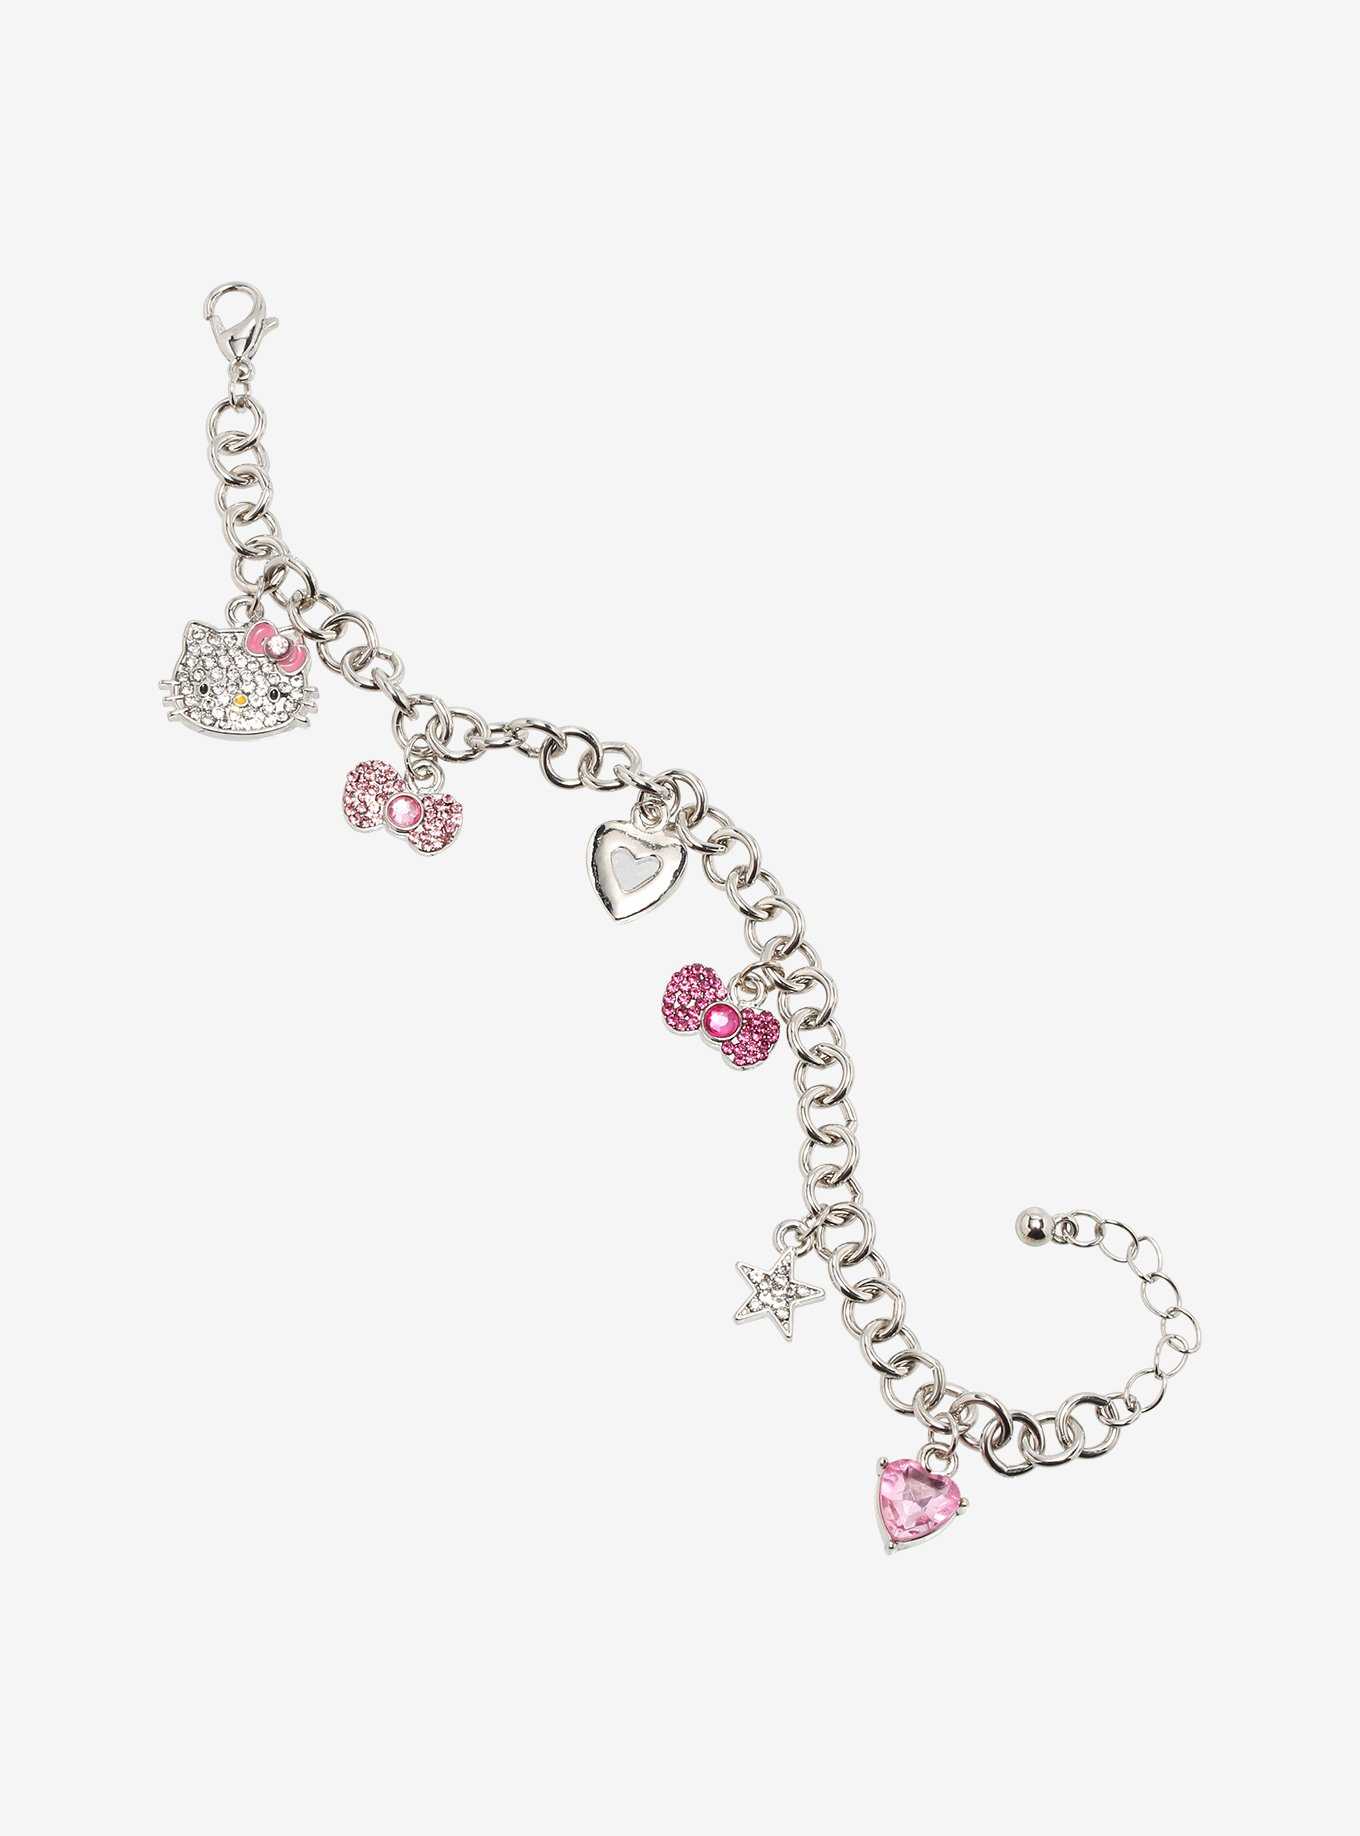 Hello Kitty Bling Charm Bracelet, , hi-res